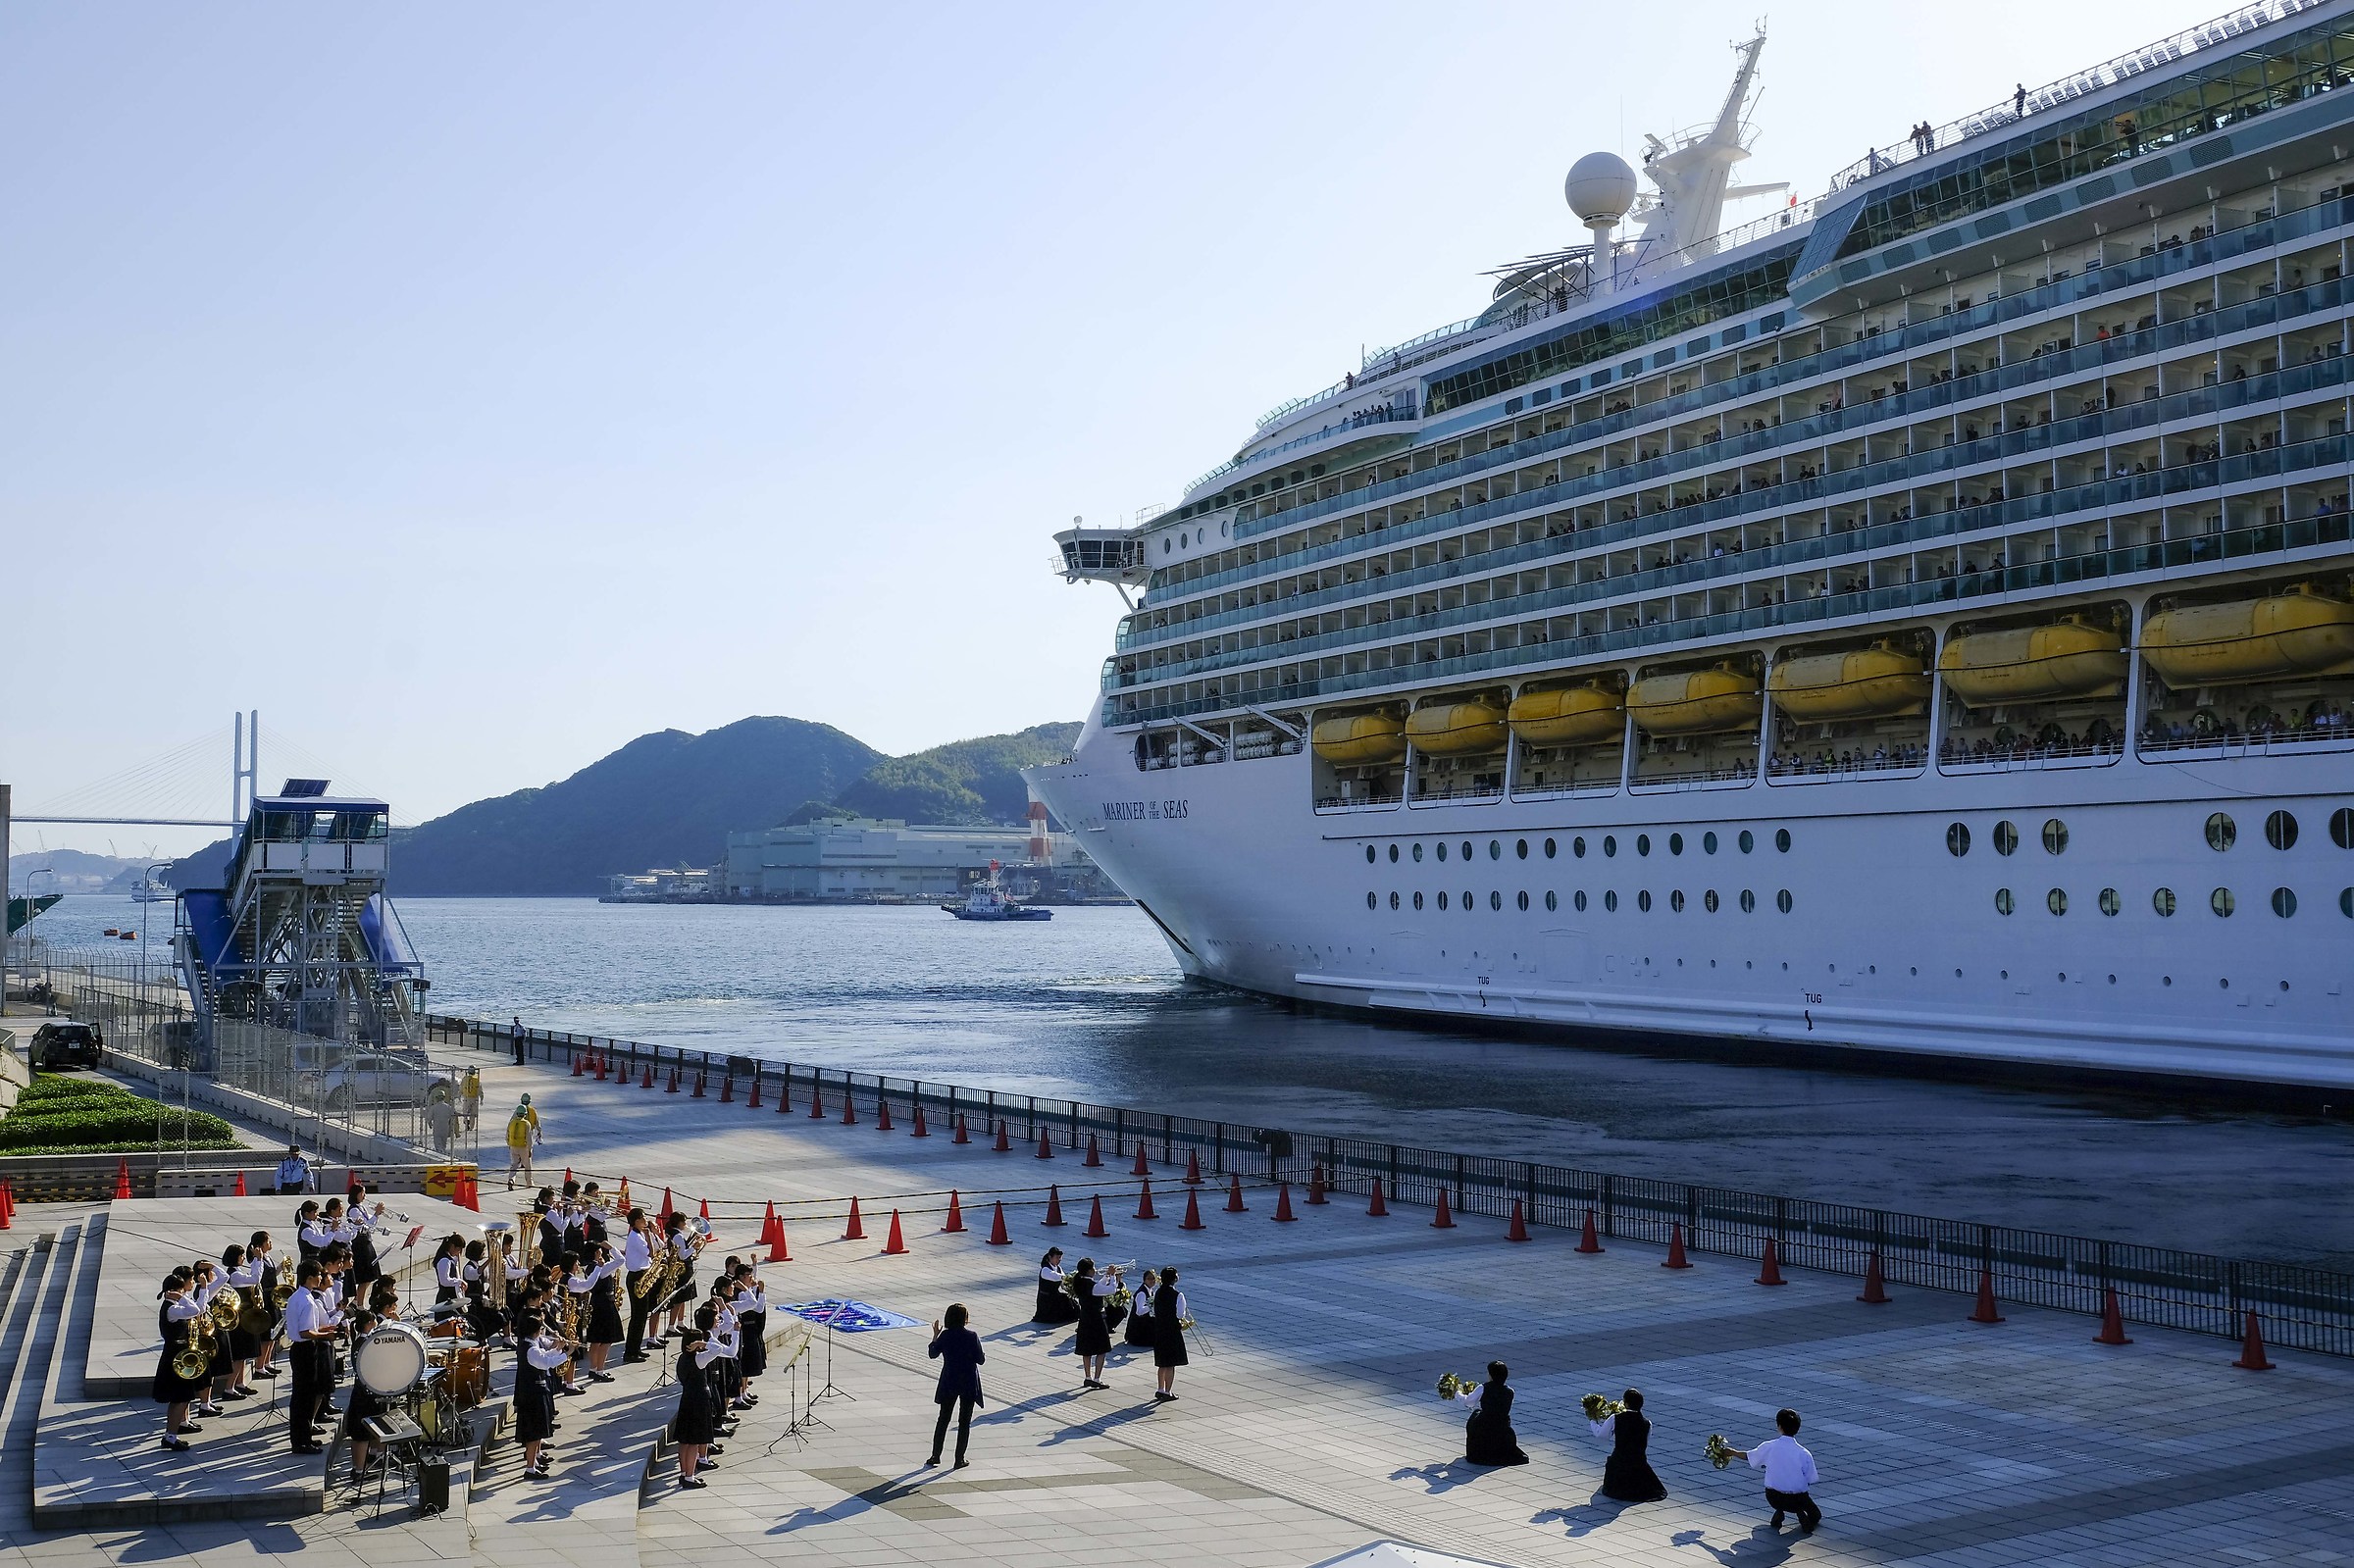 Nagasaki - Departure of cruise ship...